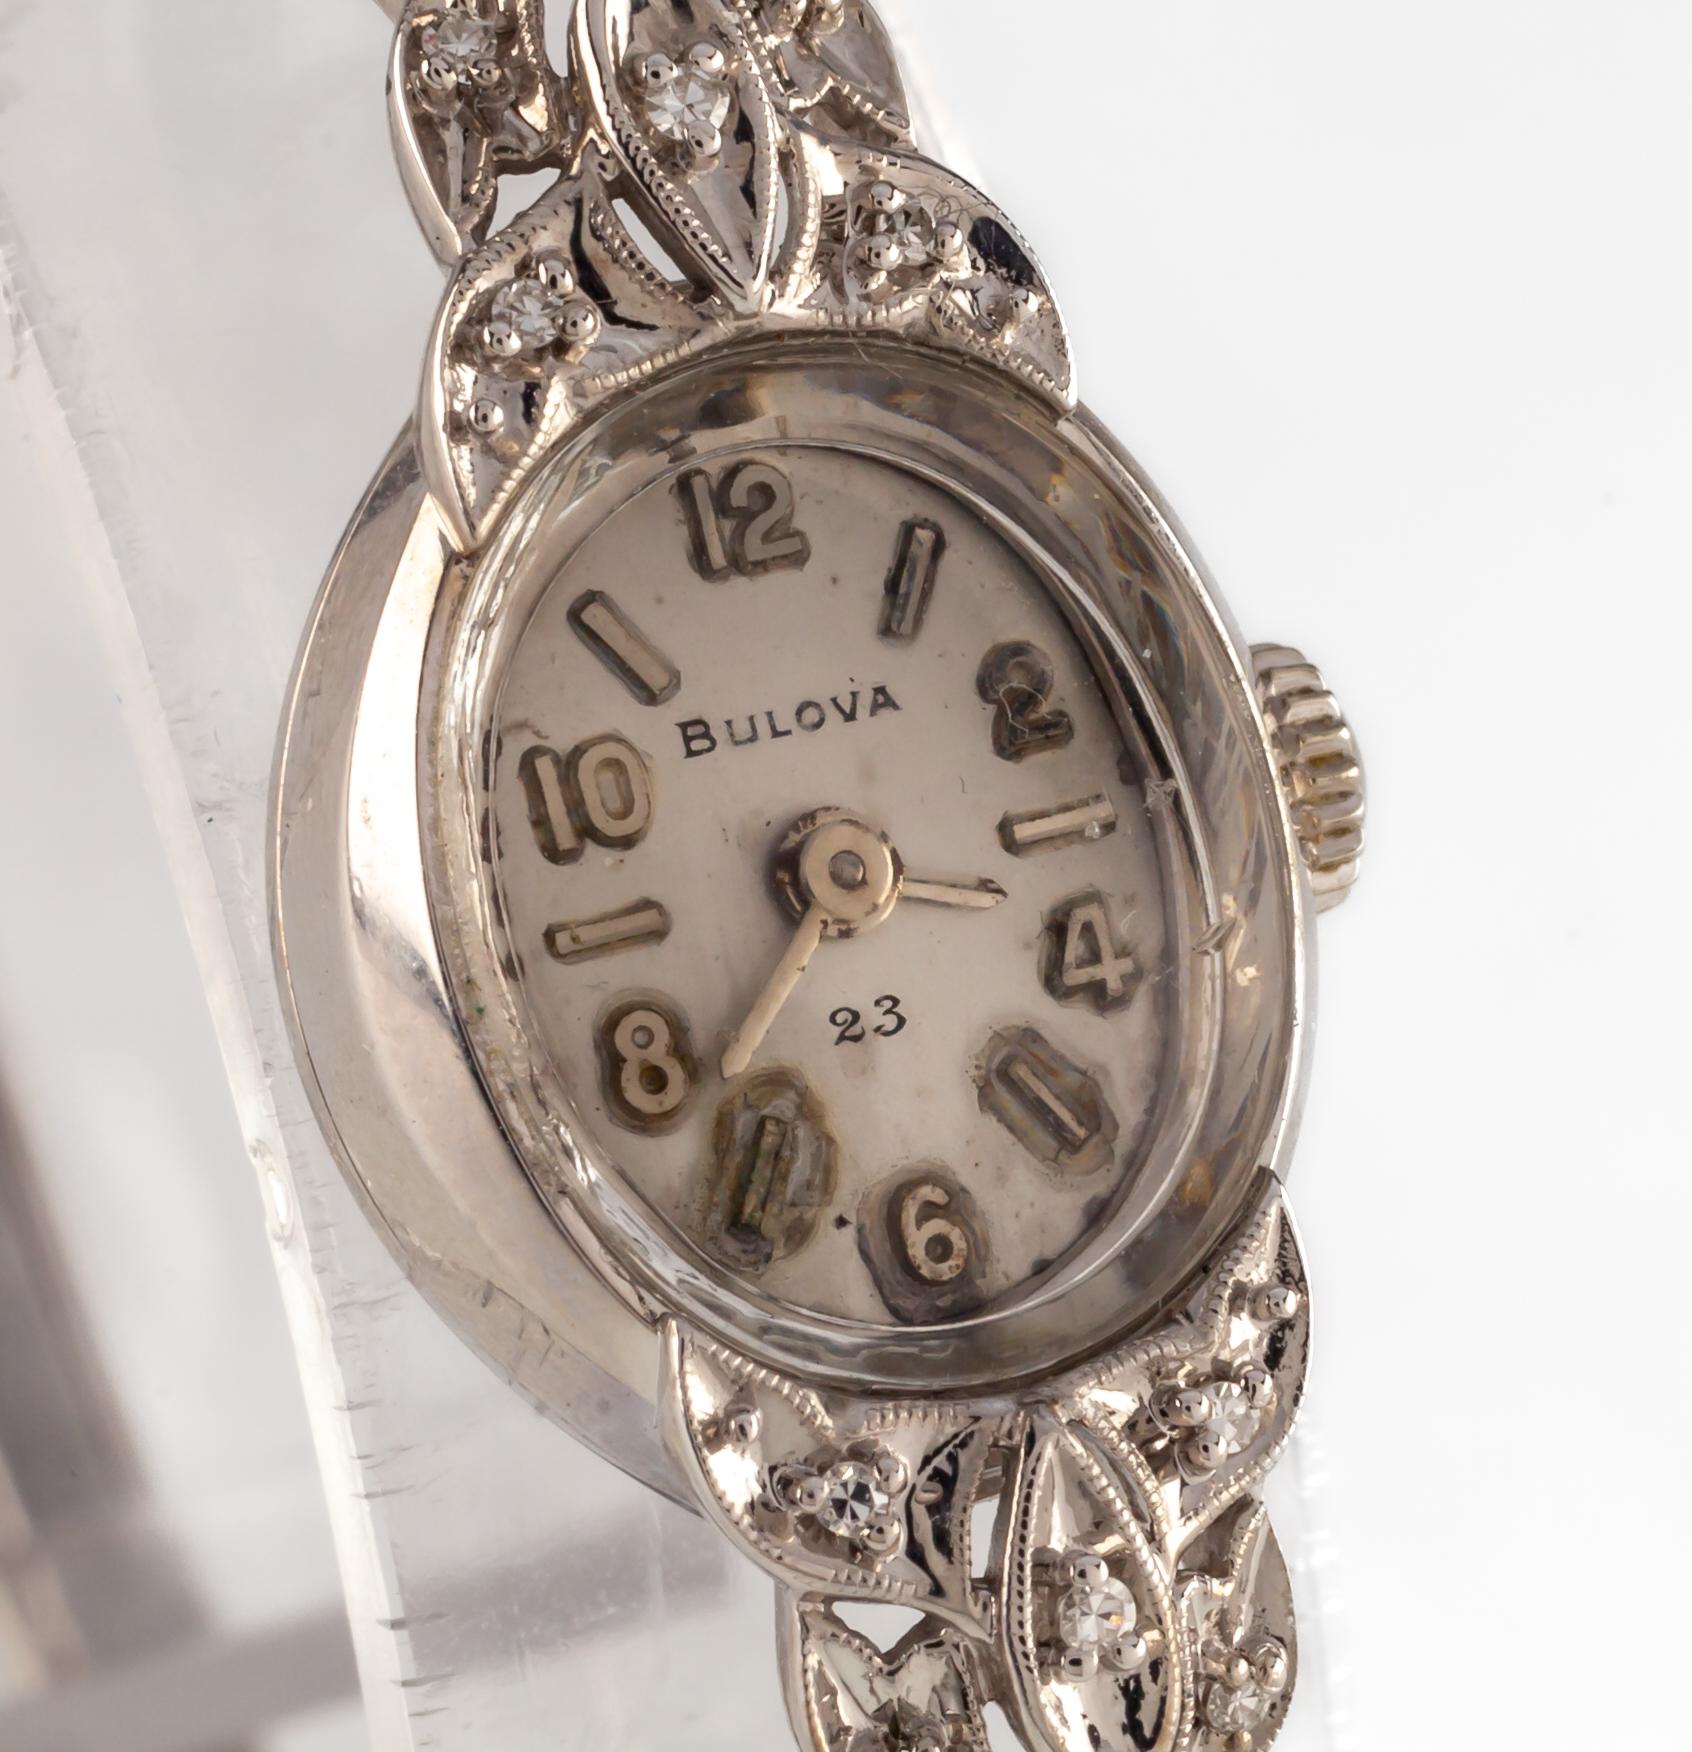 bulova 14k gold watch with diamonds